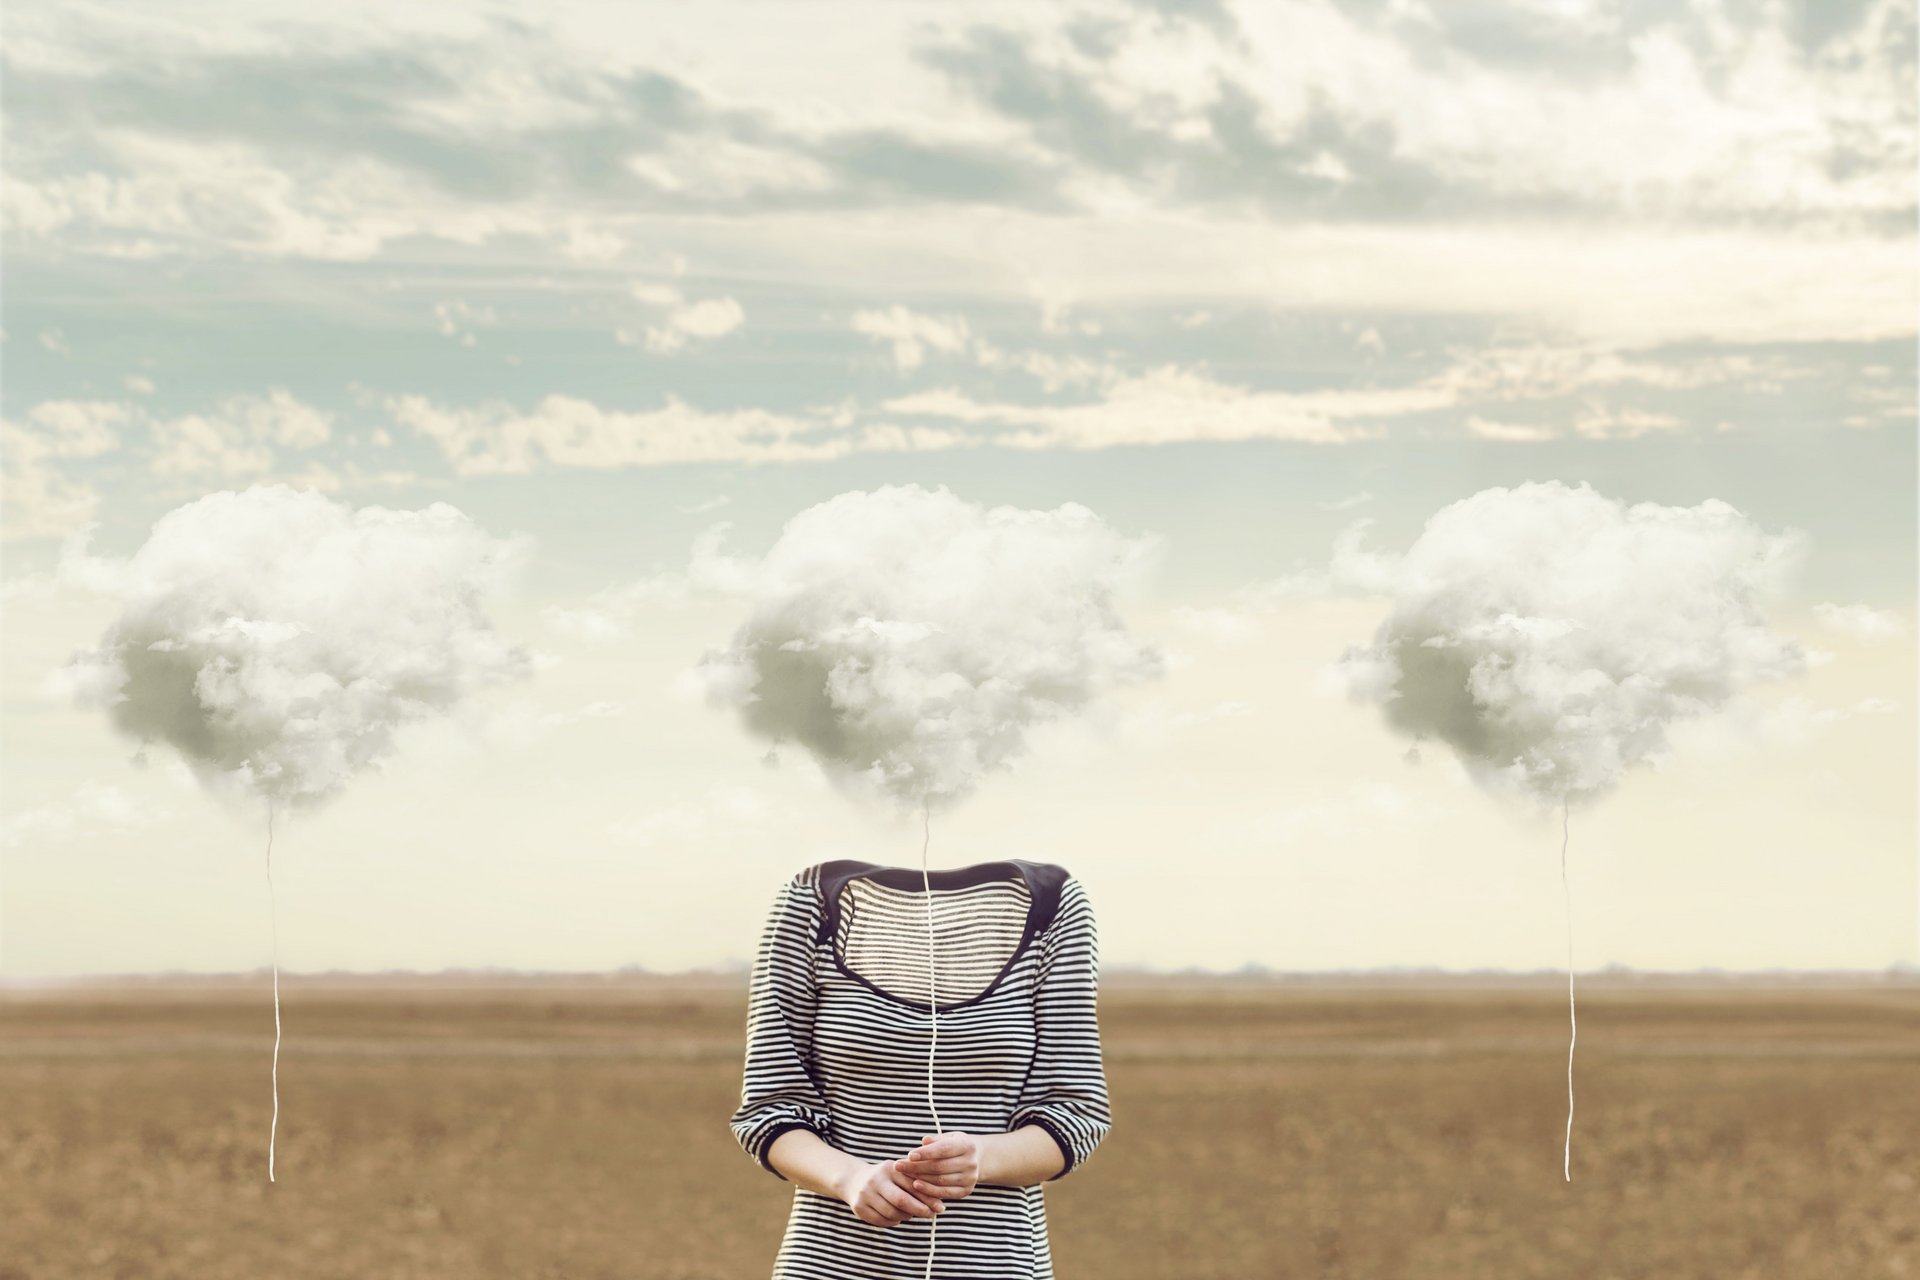 Eine Person steht auf einem Feld und hält eine Wolke am Faden in der Hand, welche den Kopf ersetzt.